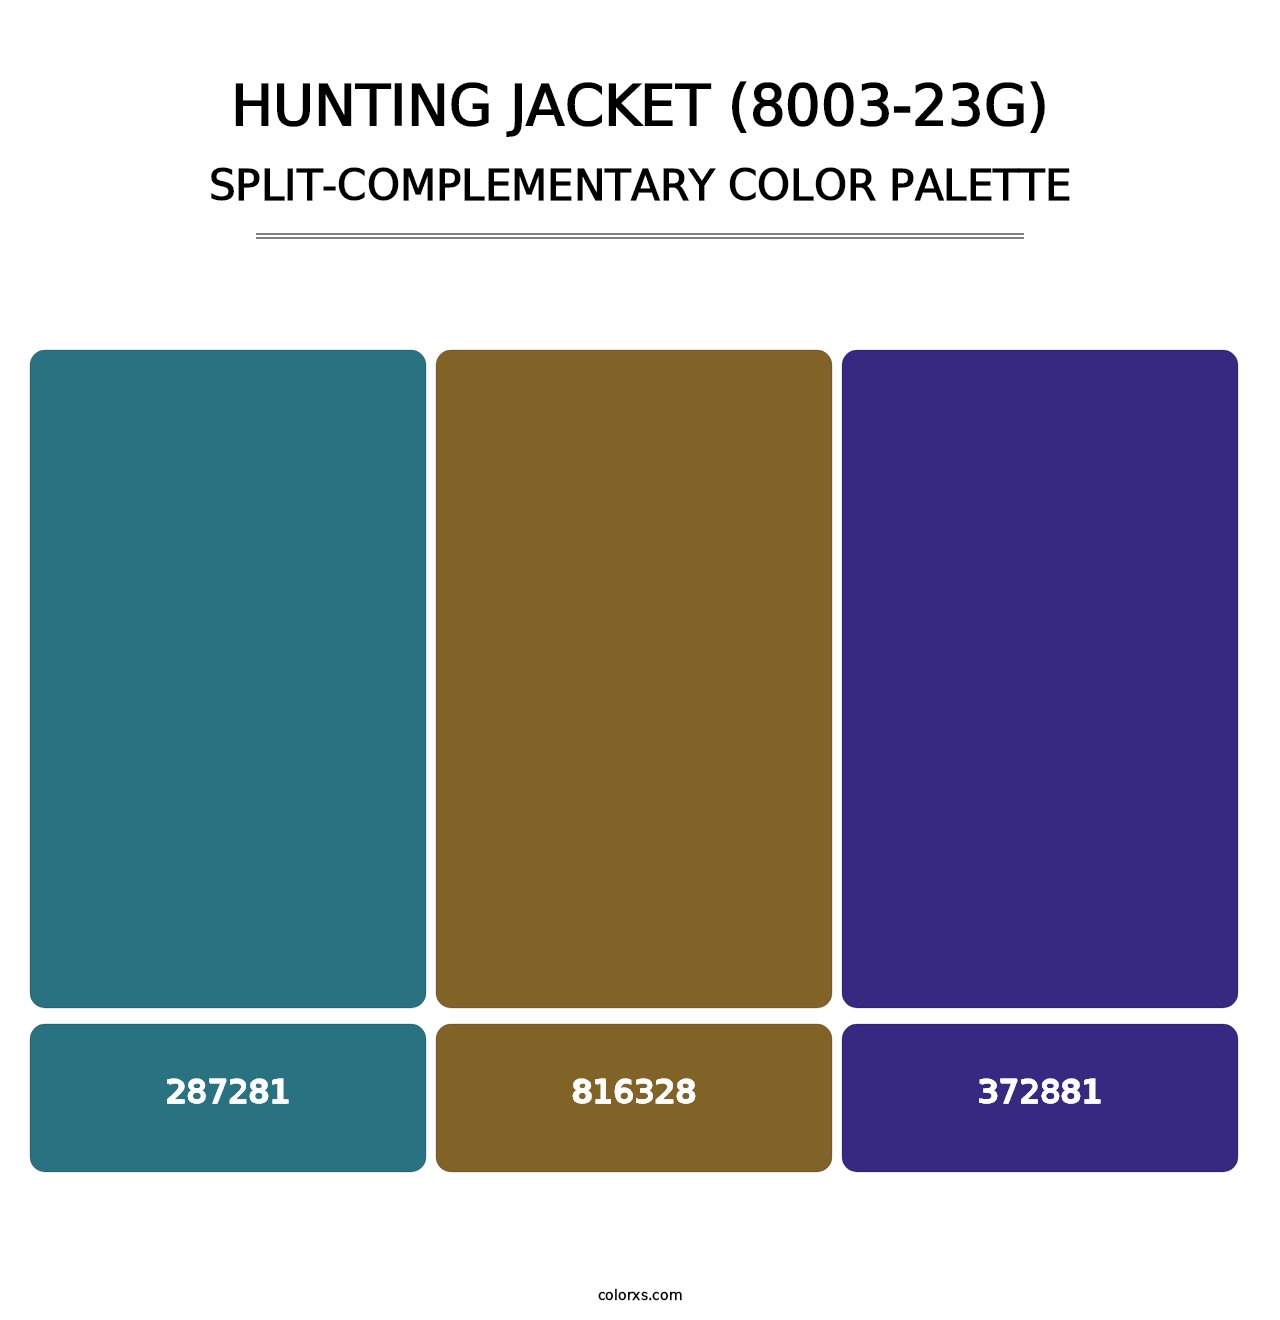 Hunting Jacket (8003-23G) - Split-Complementary Color Palette